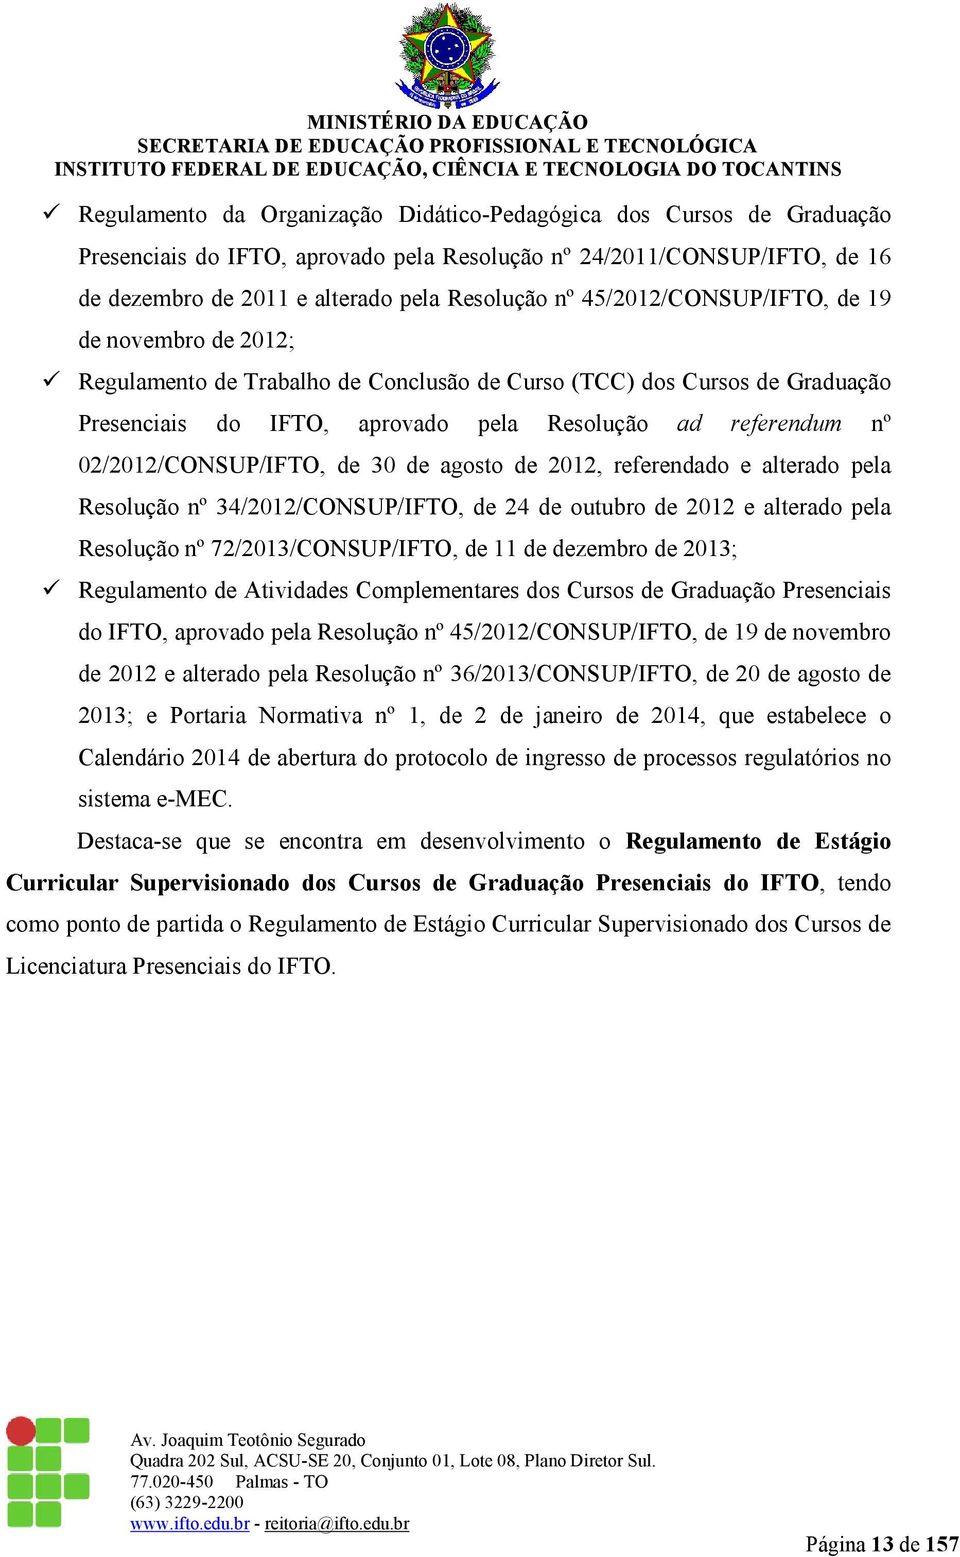 02/2012/CONSUP/IFTO, de 30 de agosto de 2012, referendado e alterado pela Resolução nº 34/2012/CONSUP/IFTO, de 24 de outubro de 2012 e alterado pela Resolução nº 72/2013/CONSUP/IFTO, de 11 de